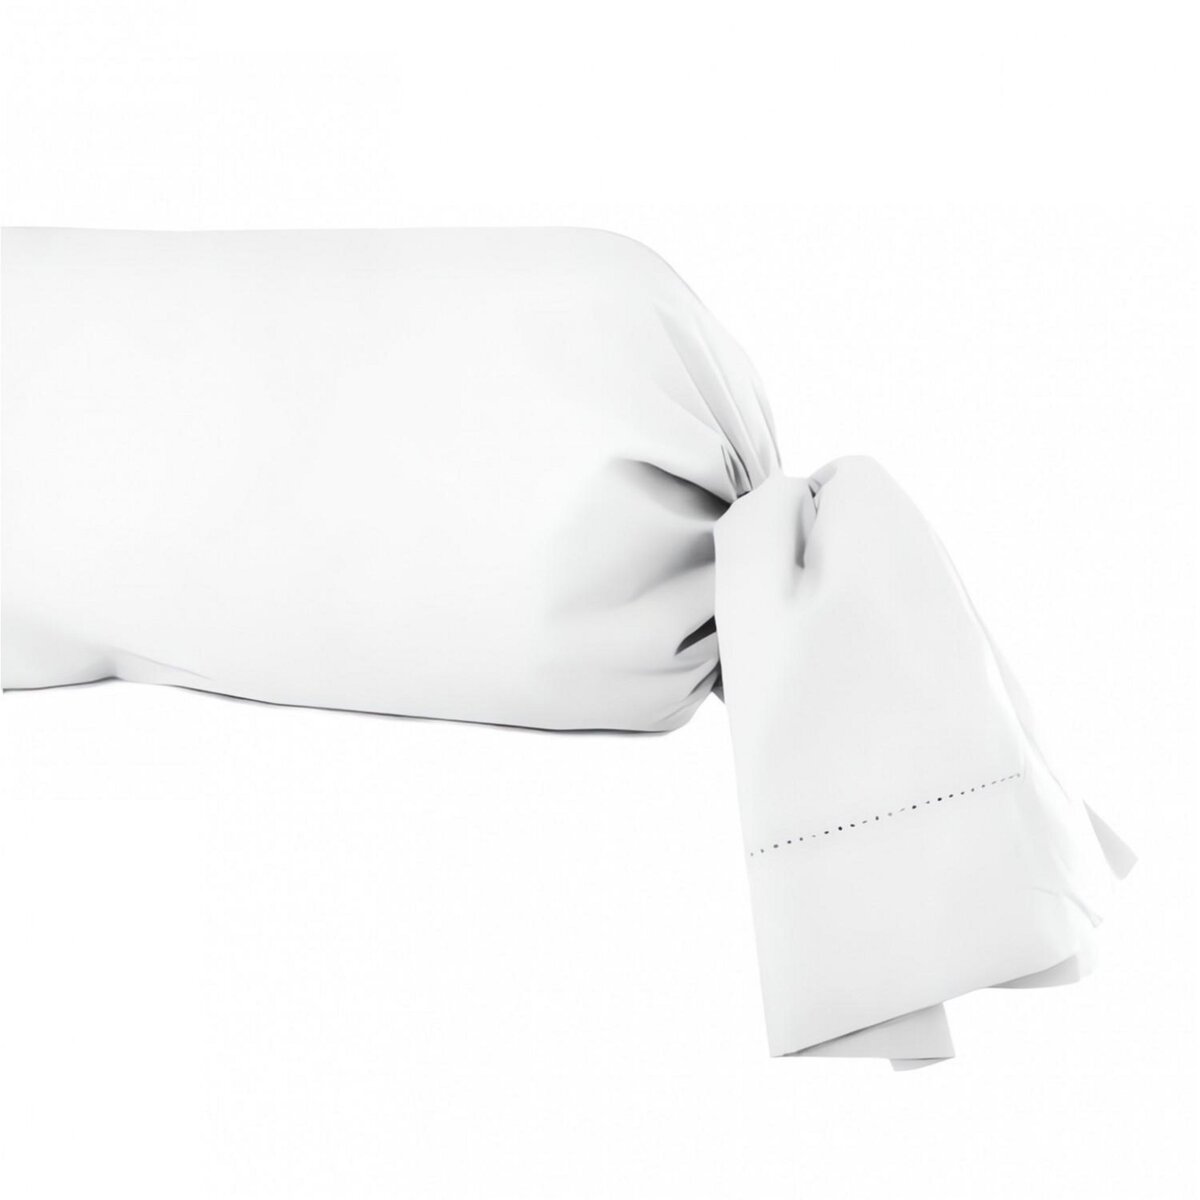 SOLEIL D'OCRE Taie de traversin en coton 45x185 cm PERCALE blanc, par Soleil d'ocre